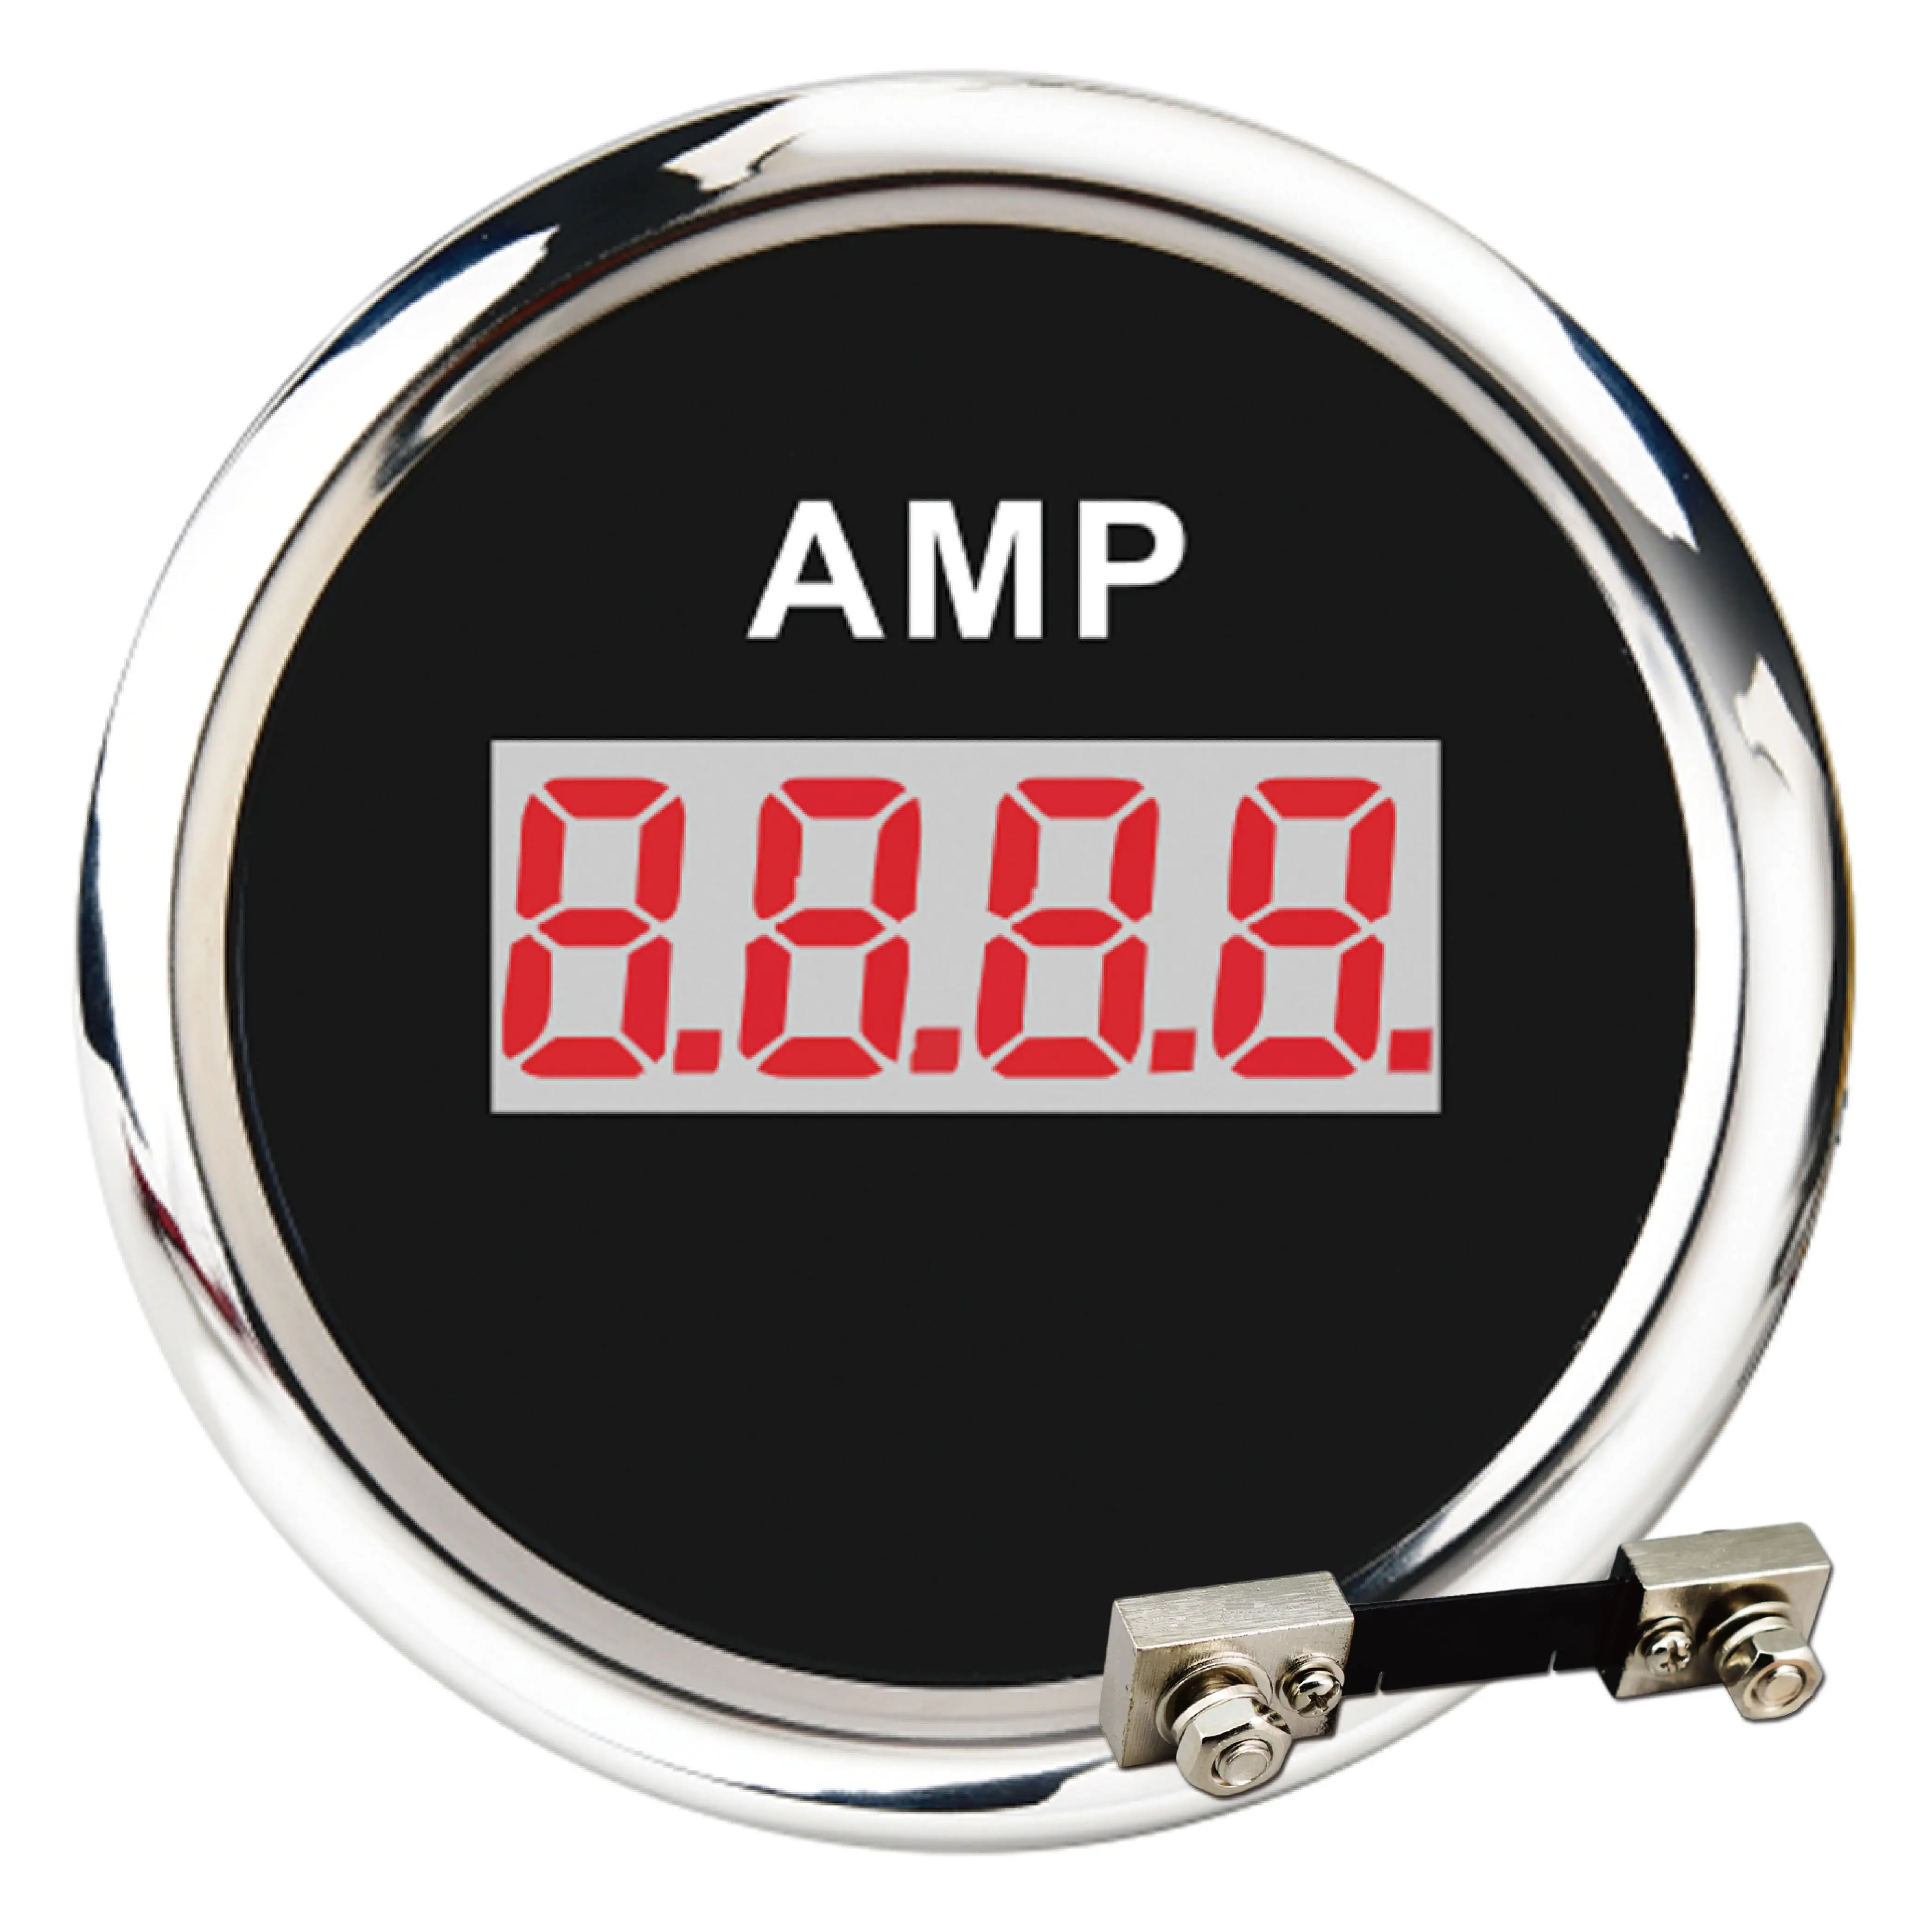 52mm digital black face red LED backlight ammeter gauge with sensor